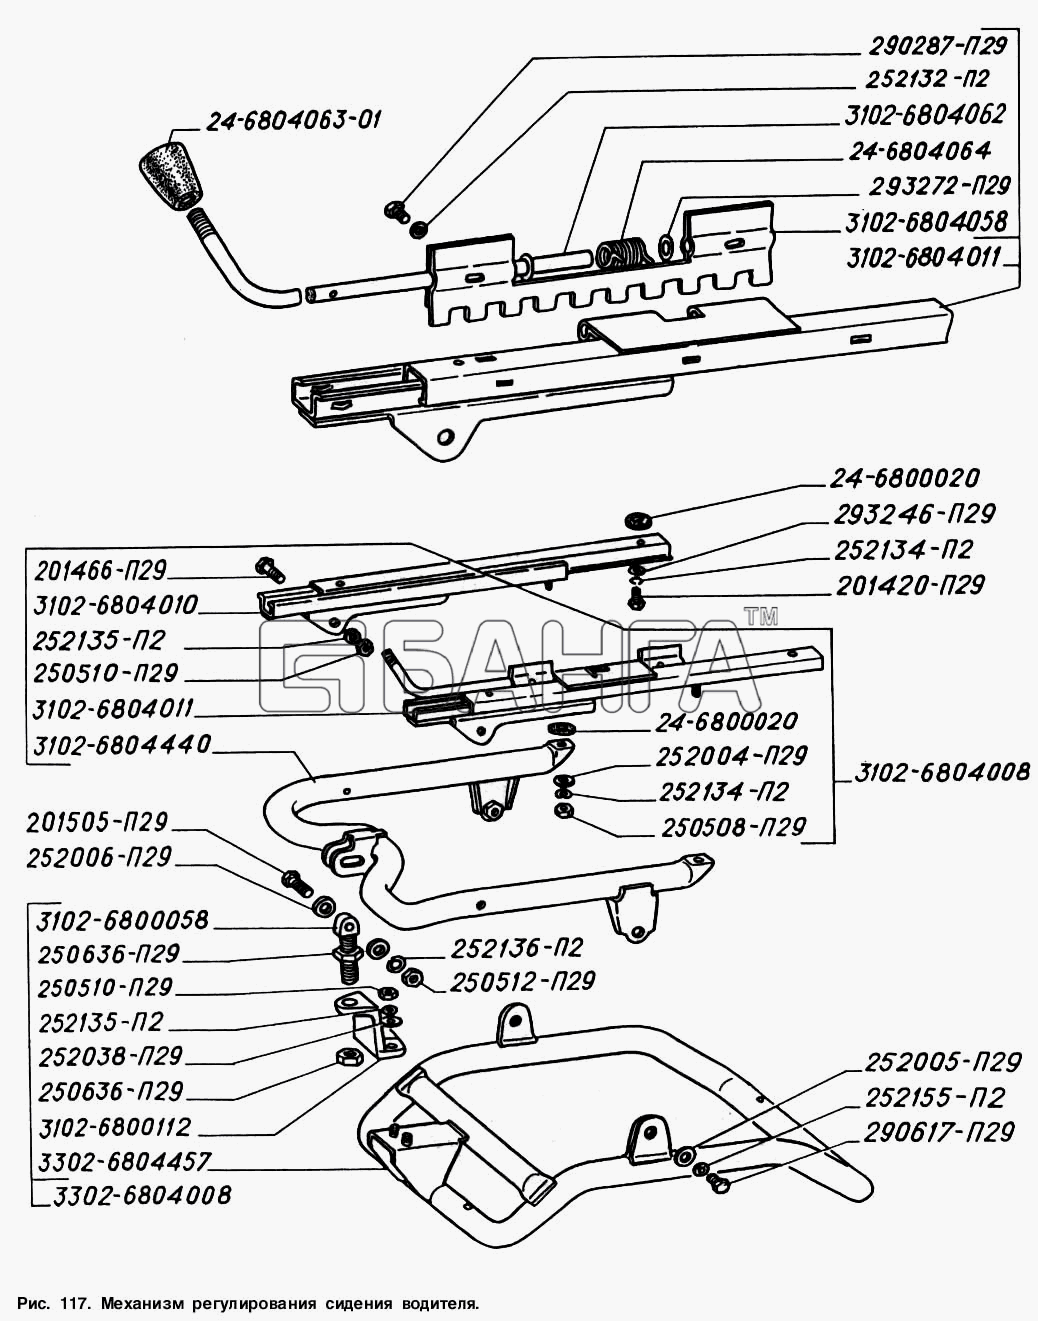 ГАЗ ГАЗ-2217 (Соболь) Схема Механизм регулирования сиденья водителя-36